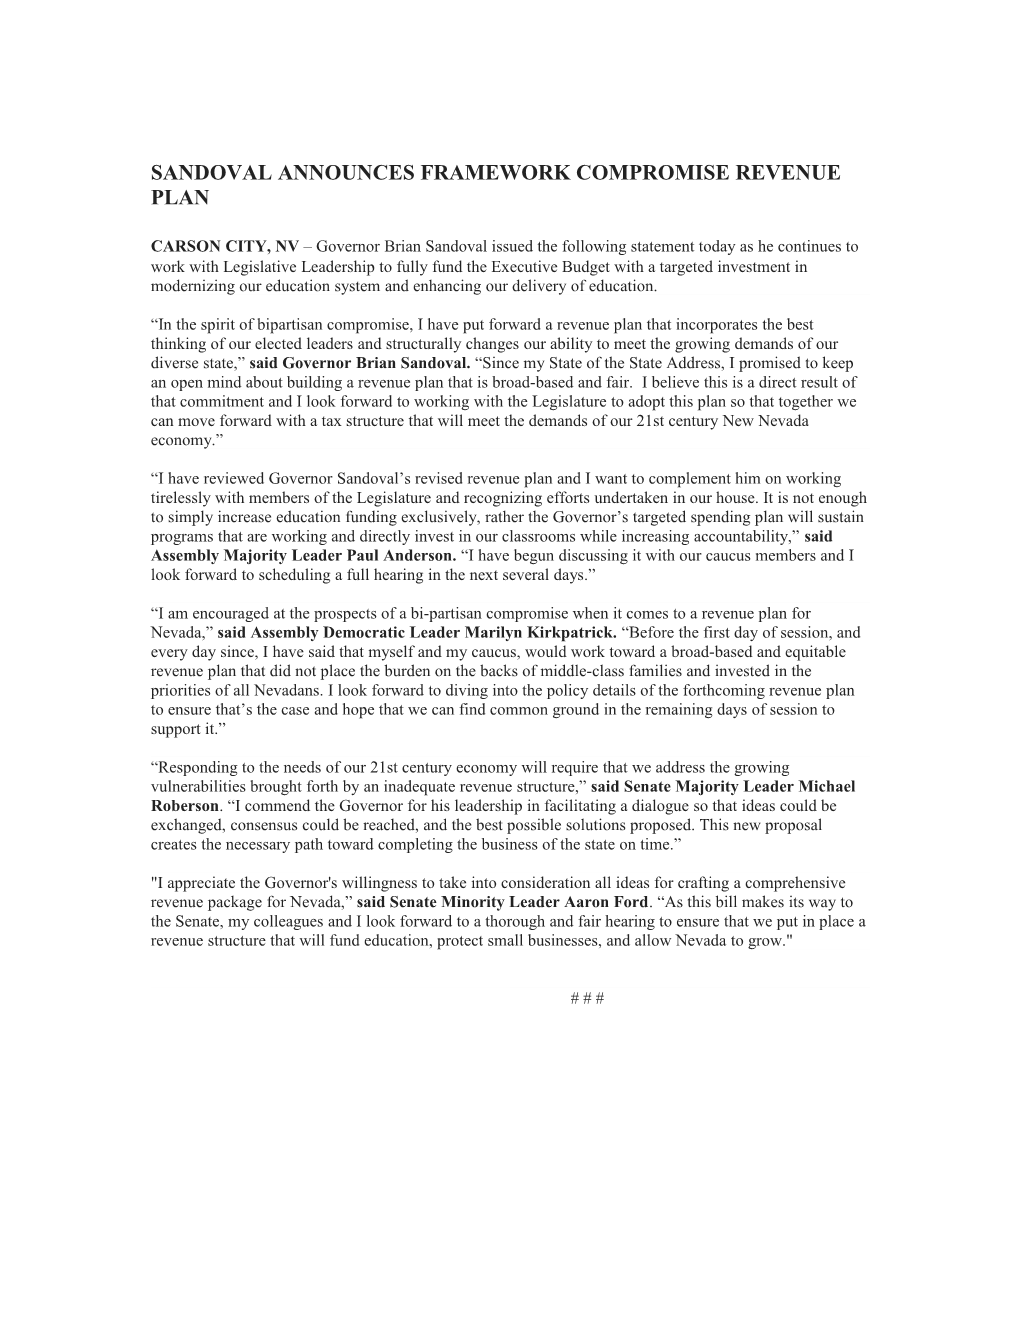 Sandoval Announces Framework Compromise Revenue Plan